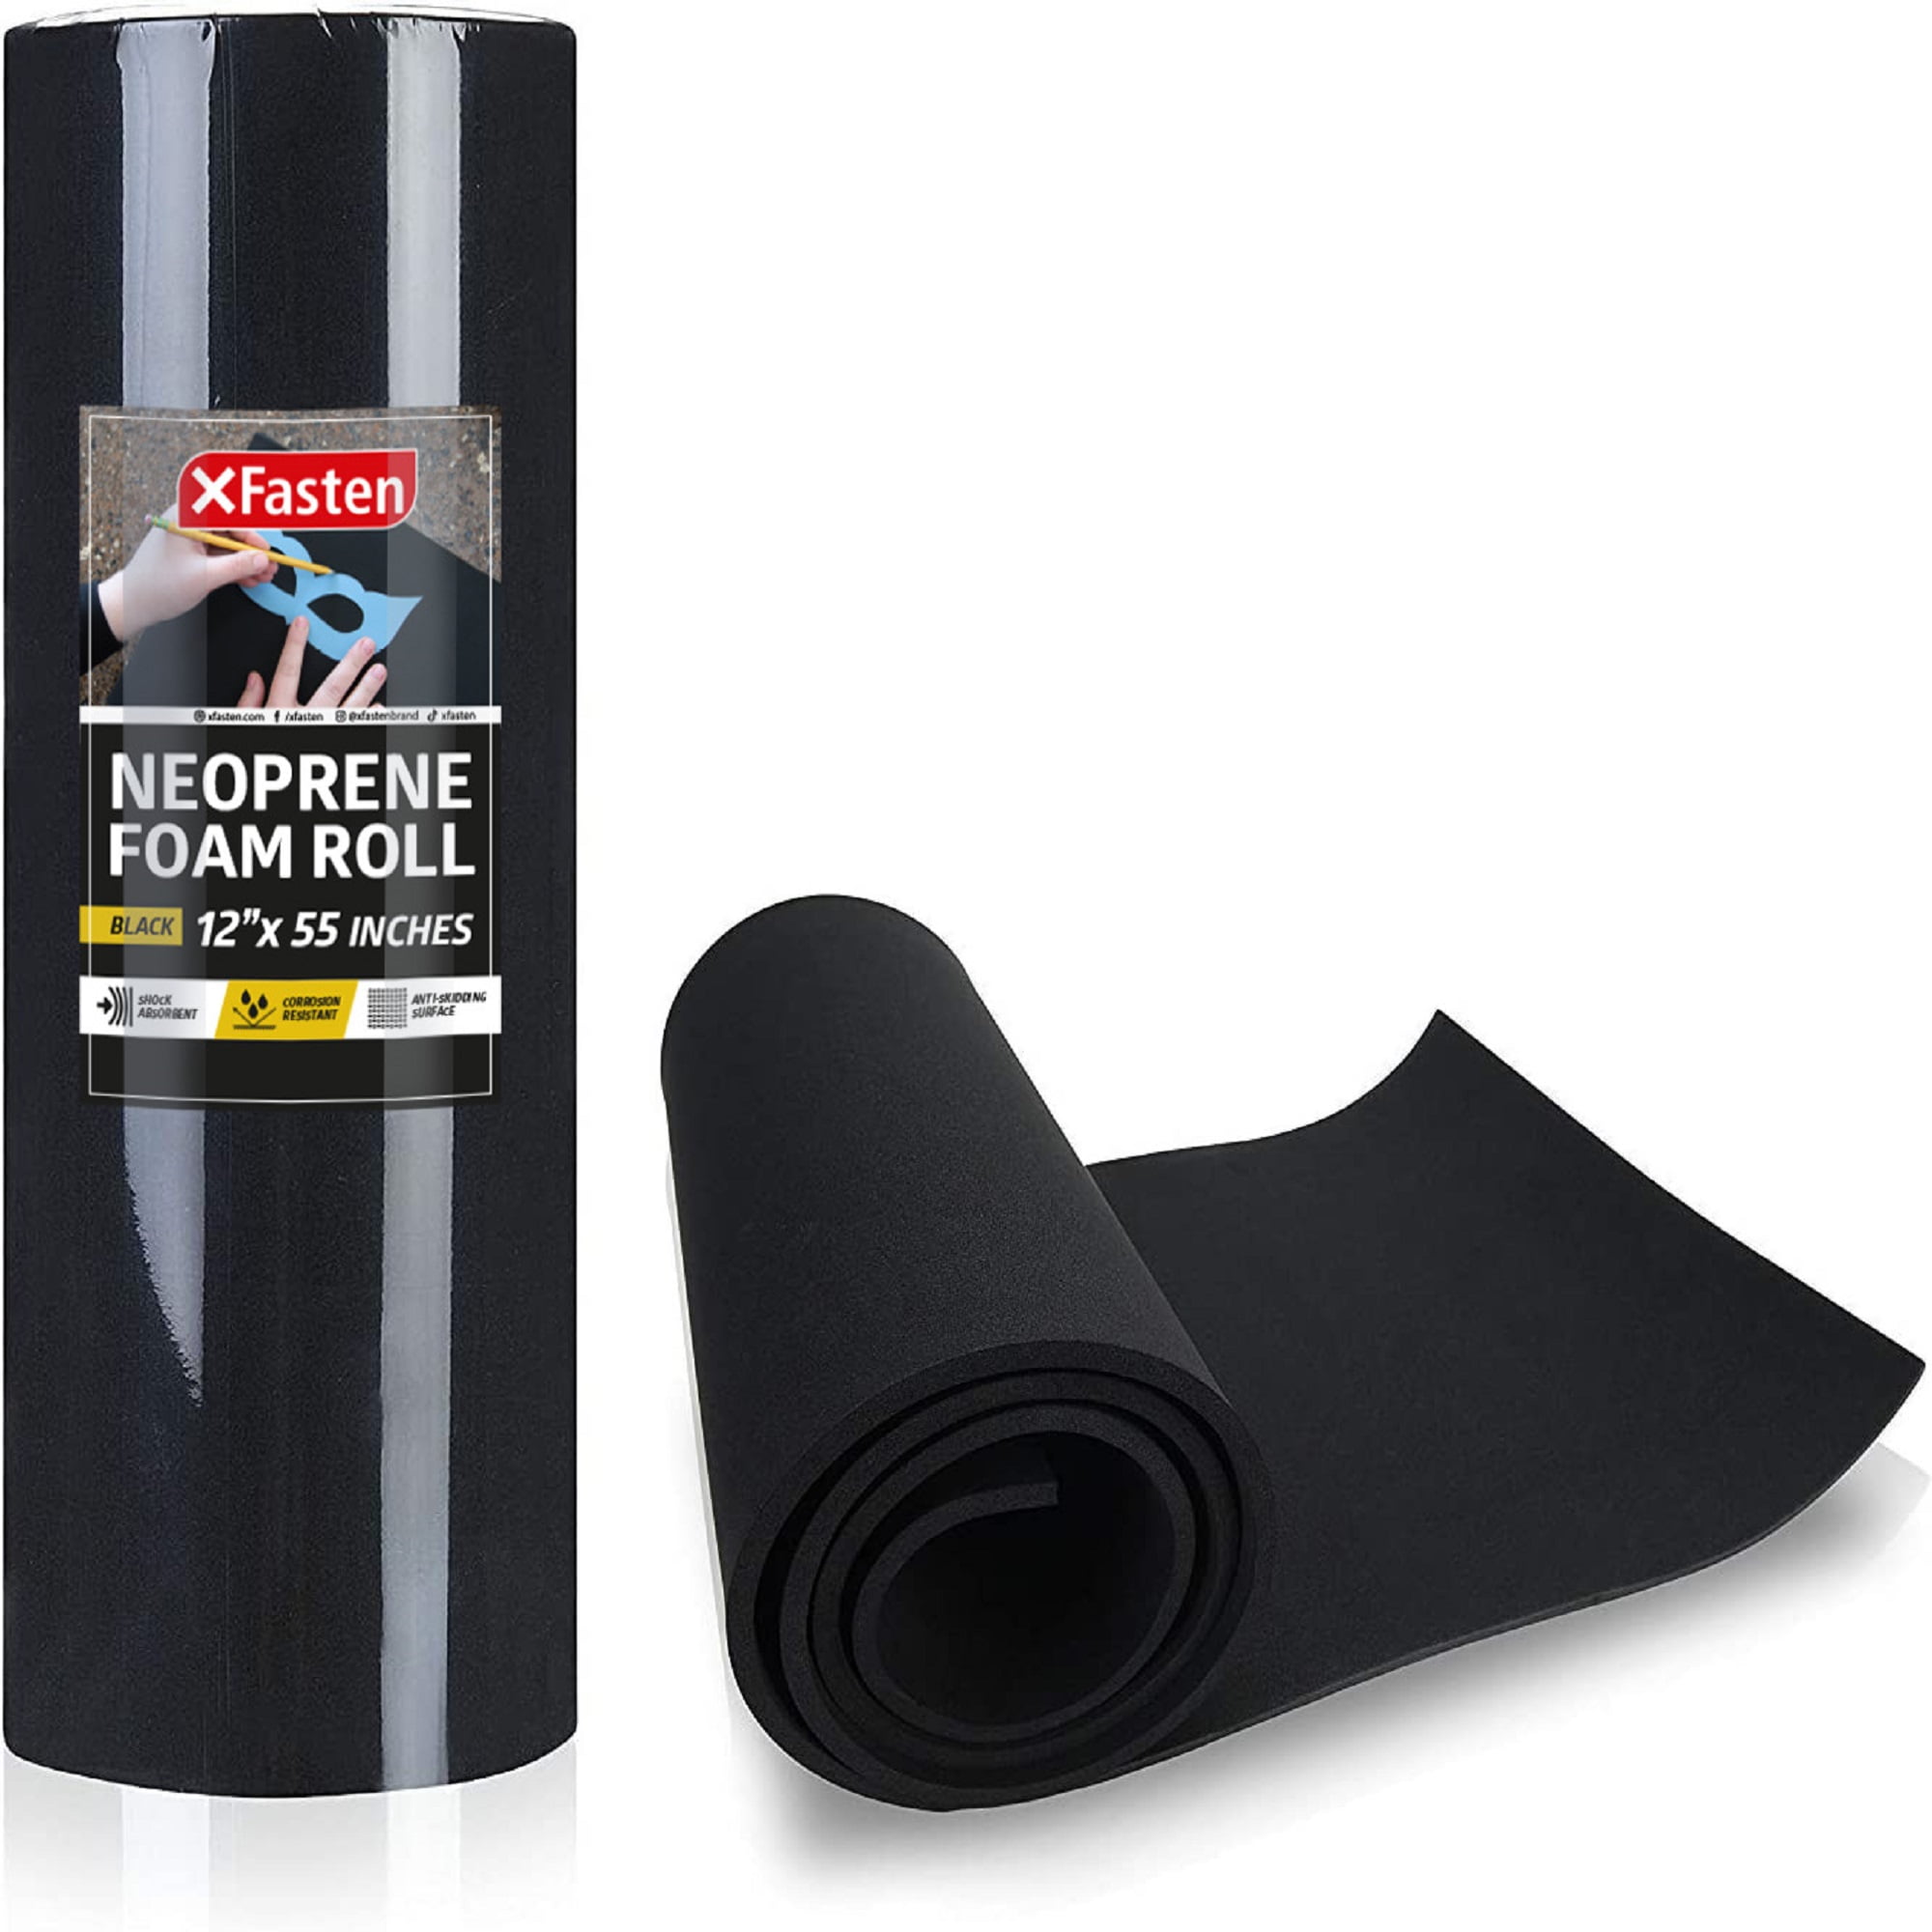 XFasten Neoprene Sponge Foam Rubber Sheet Roll, Black, 1/4